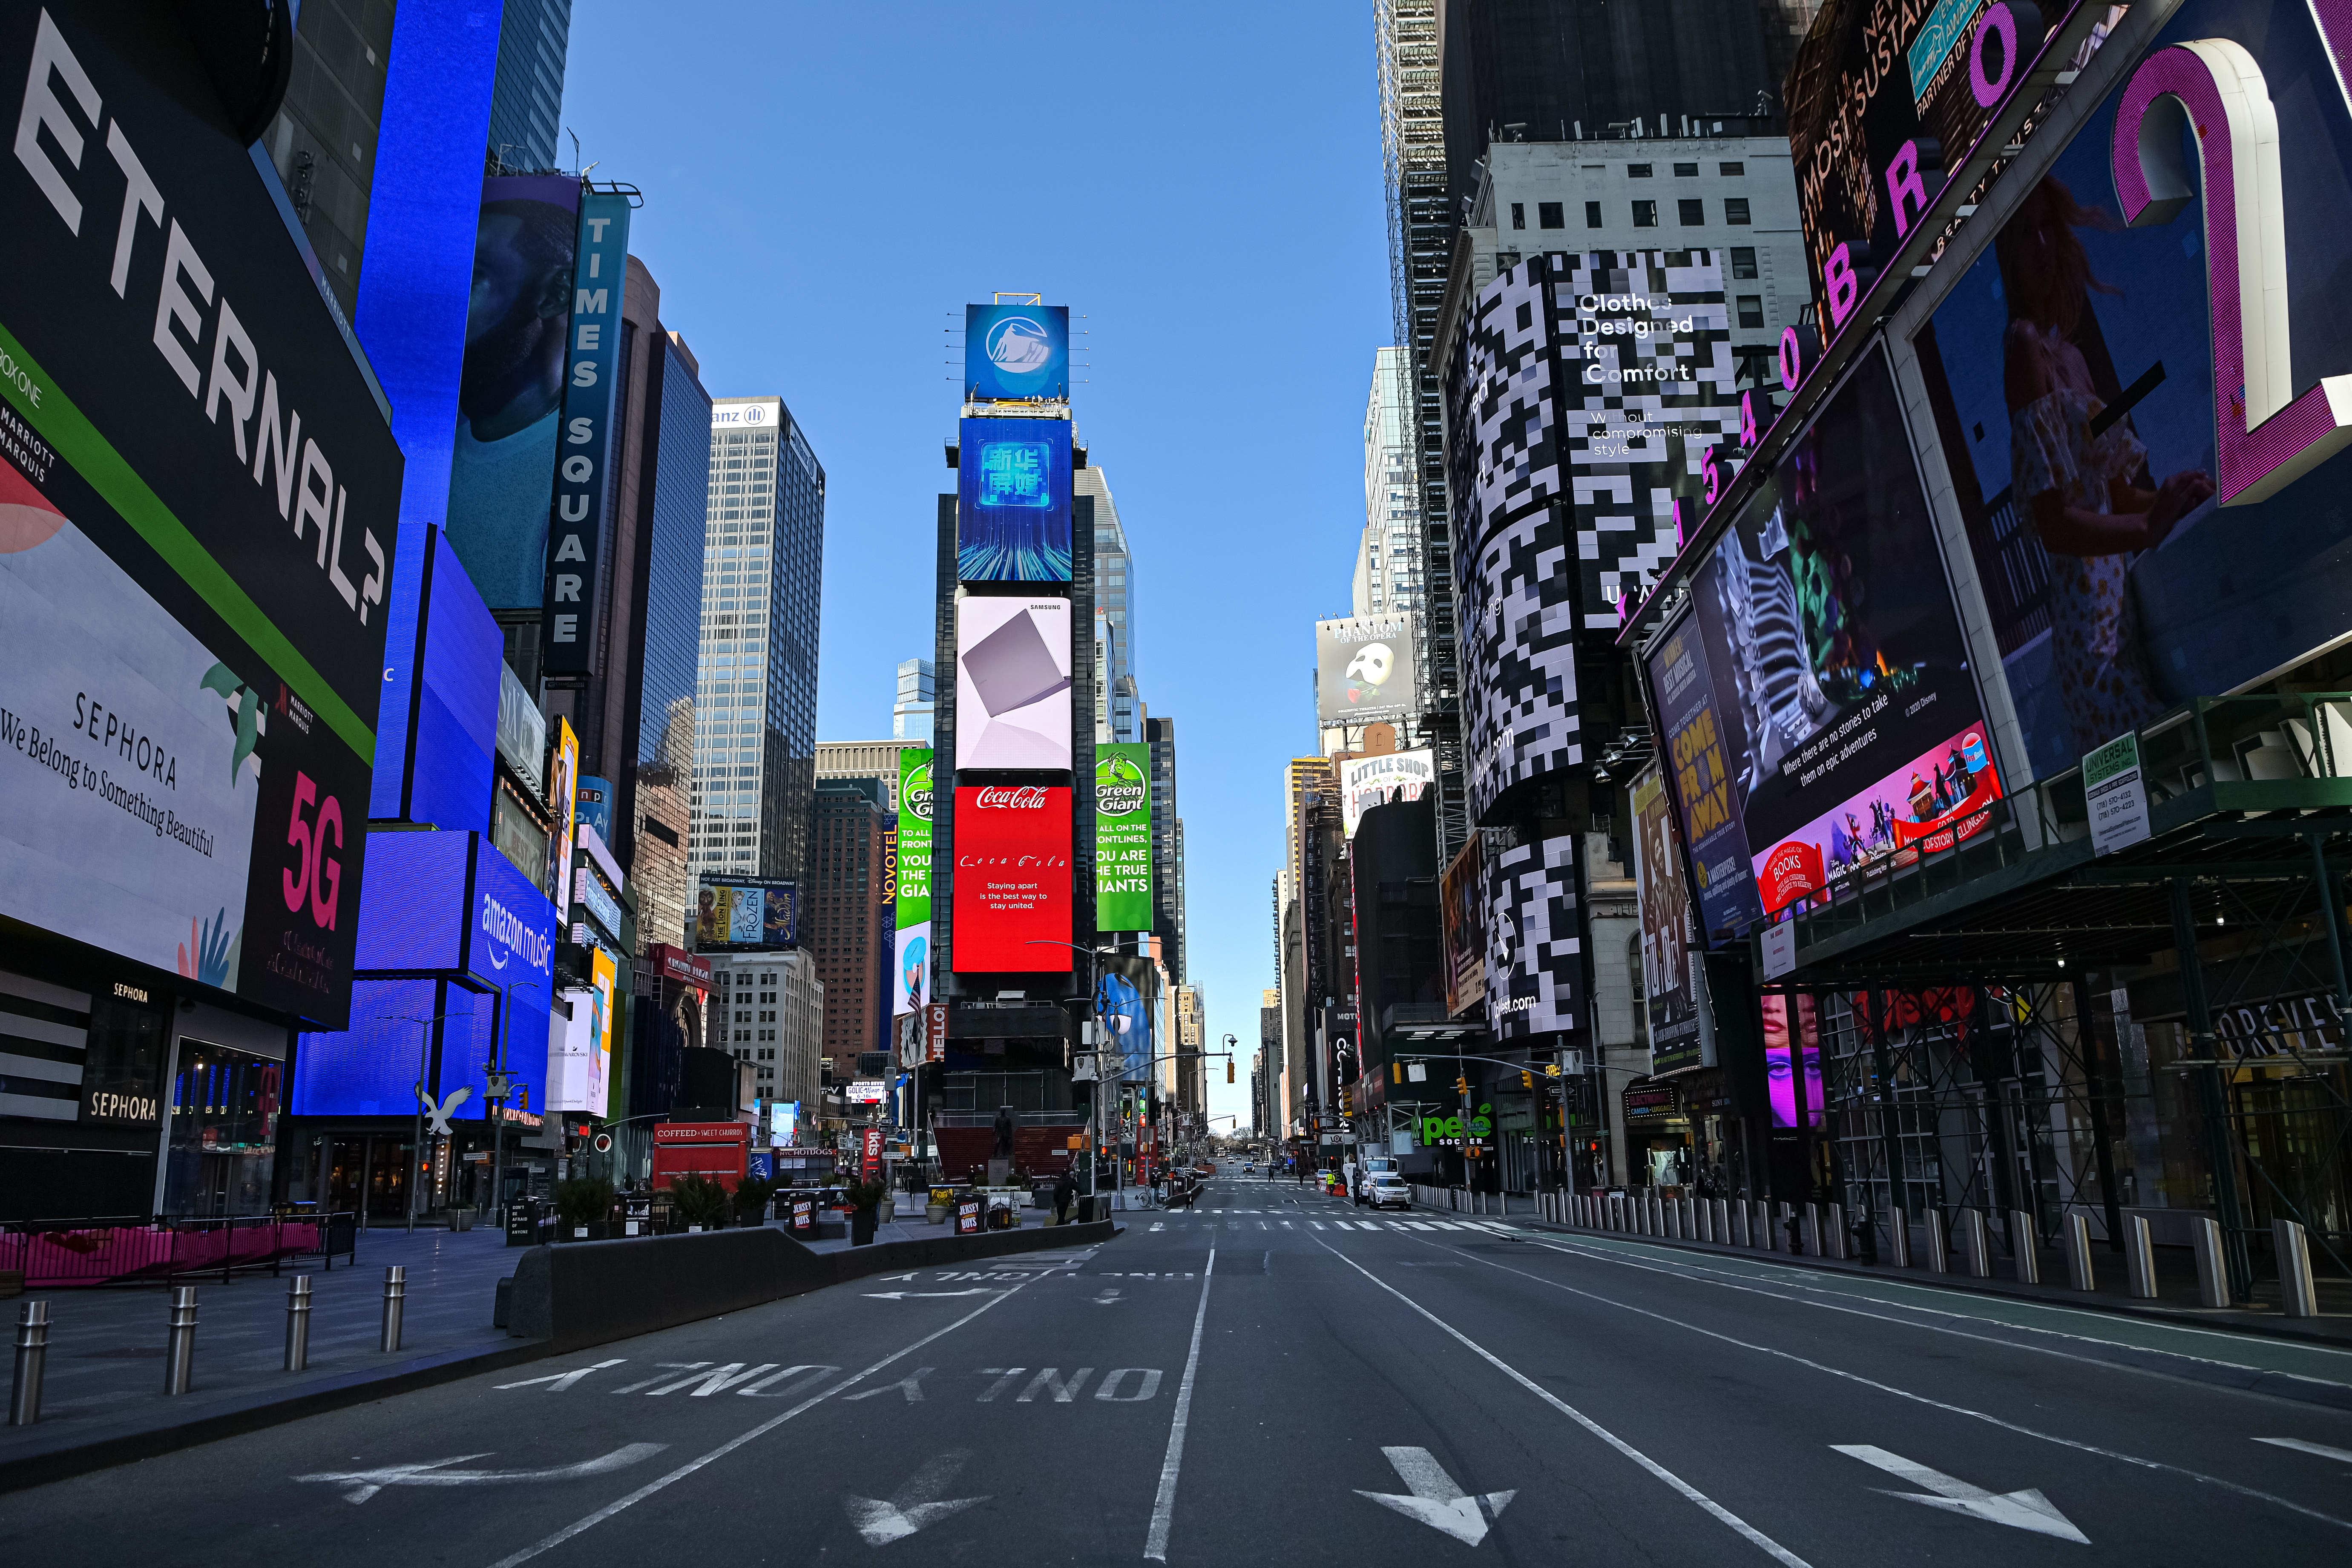 El centro de Nueva York, Times Square, vacío por el coronavirus / EuropaPress